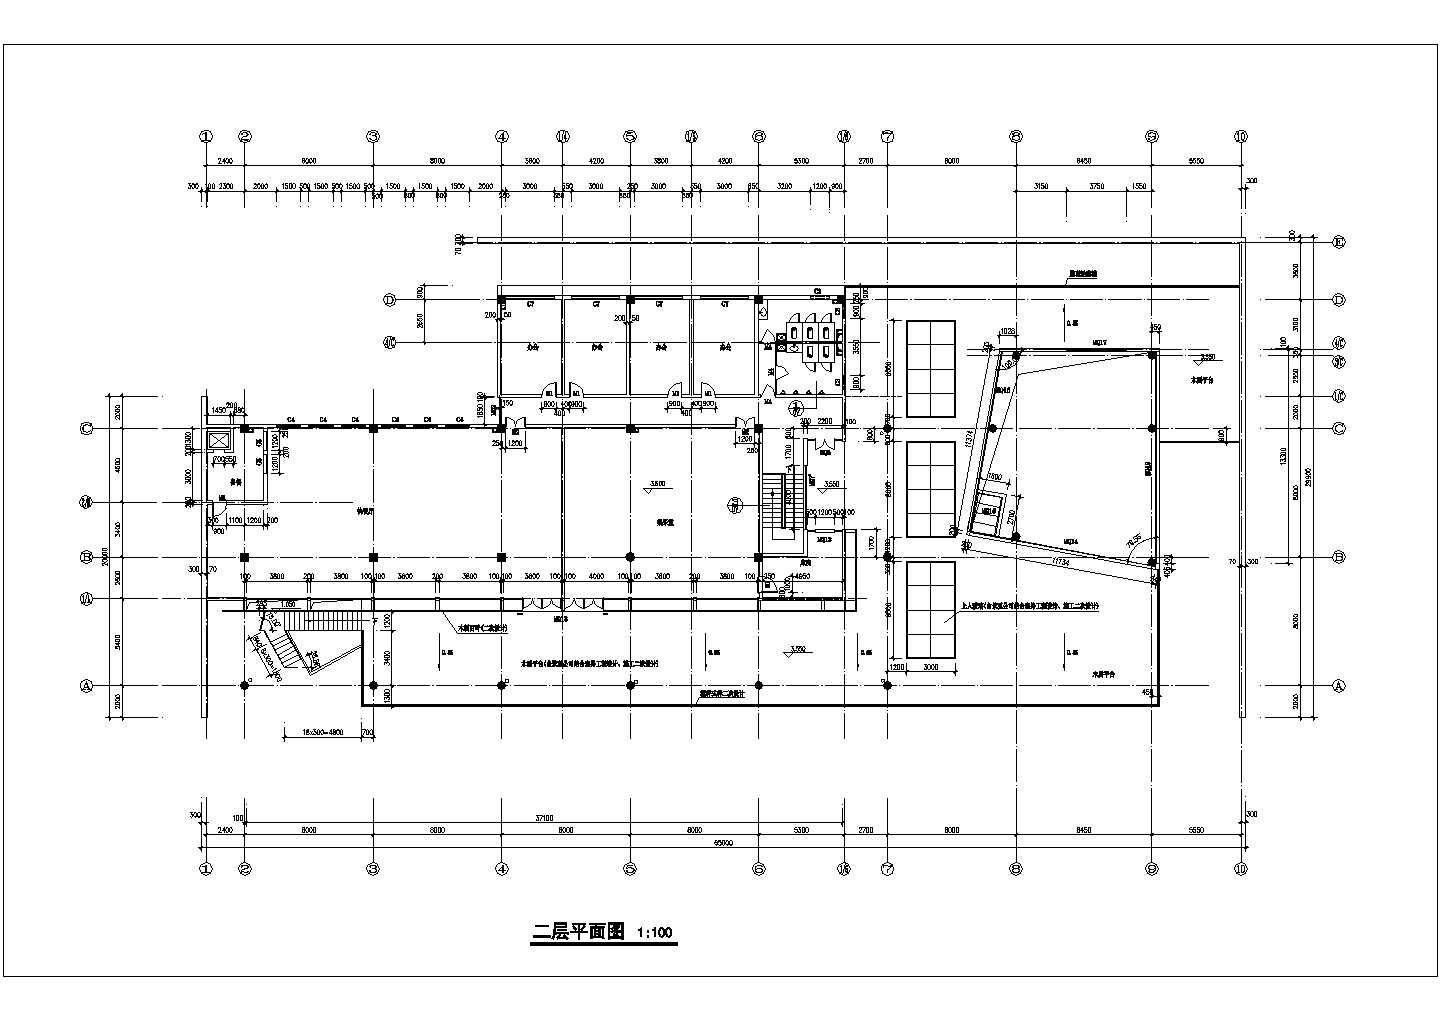 占地900平米2层钢混框架结构百货超市平立剖面设计CAD图纸